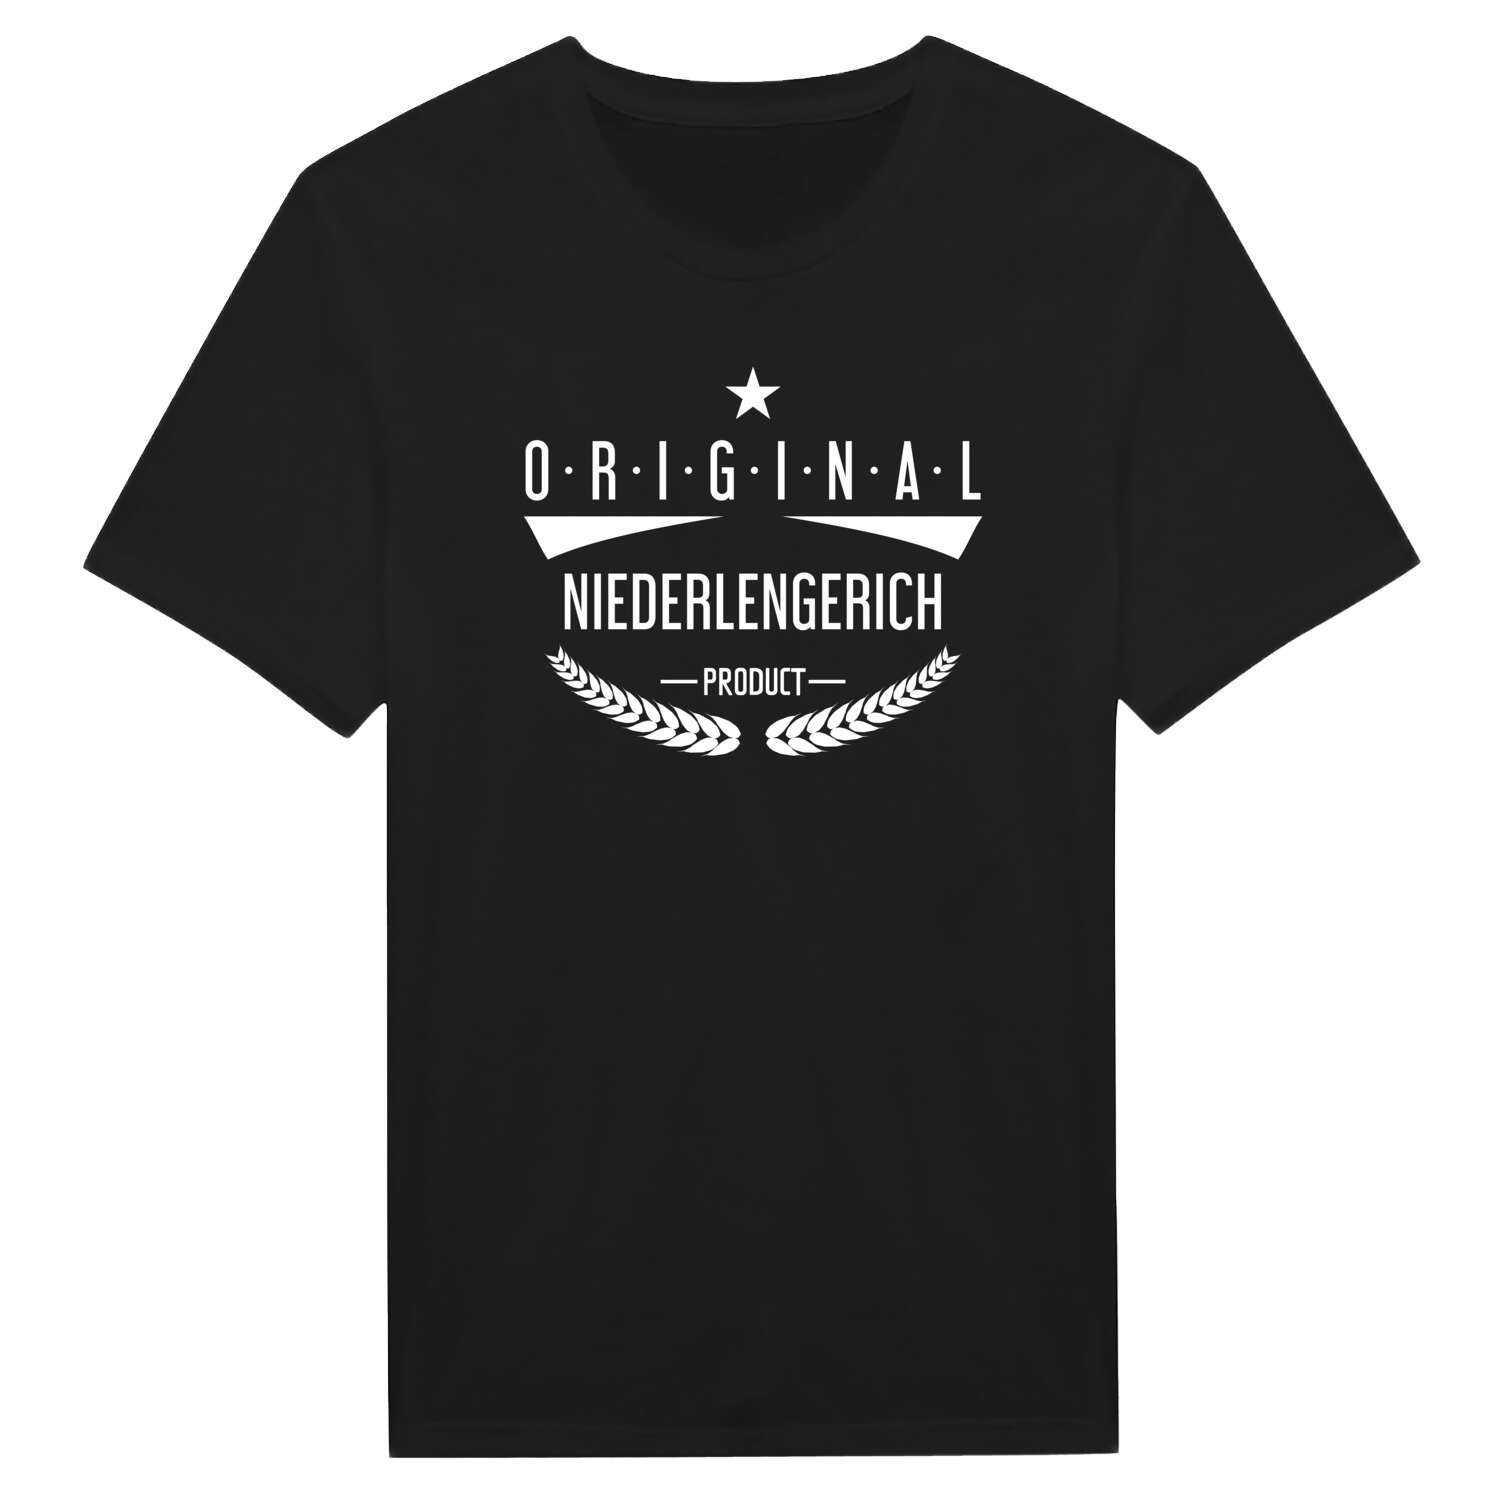 Niederlengerich T-Shirt »Original Product«